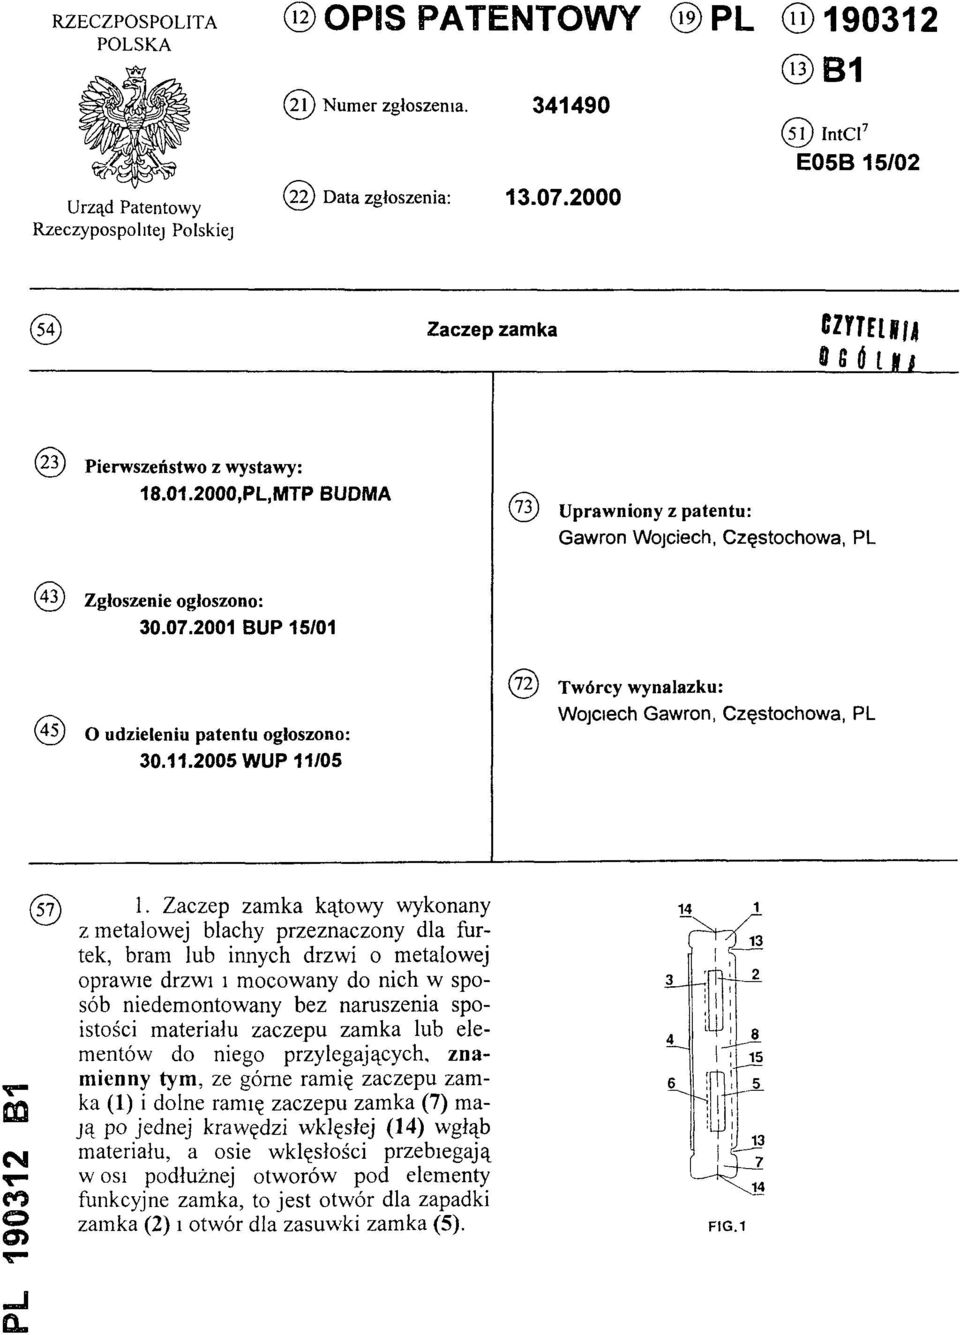 2001 BUP 15/01 (4 5) O udzieleniu patentu ogłoszono: 30.11.2005 WUP 11/05 (72) Twórcy wynalazku: Wojciech Gawron, Częstochowa, PL PL 190312 B1 (57) 1.